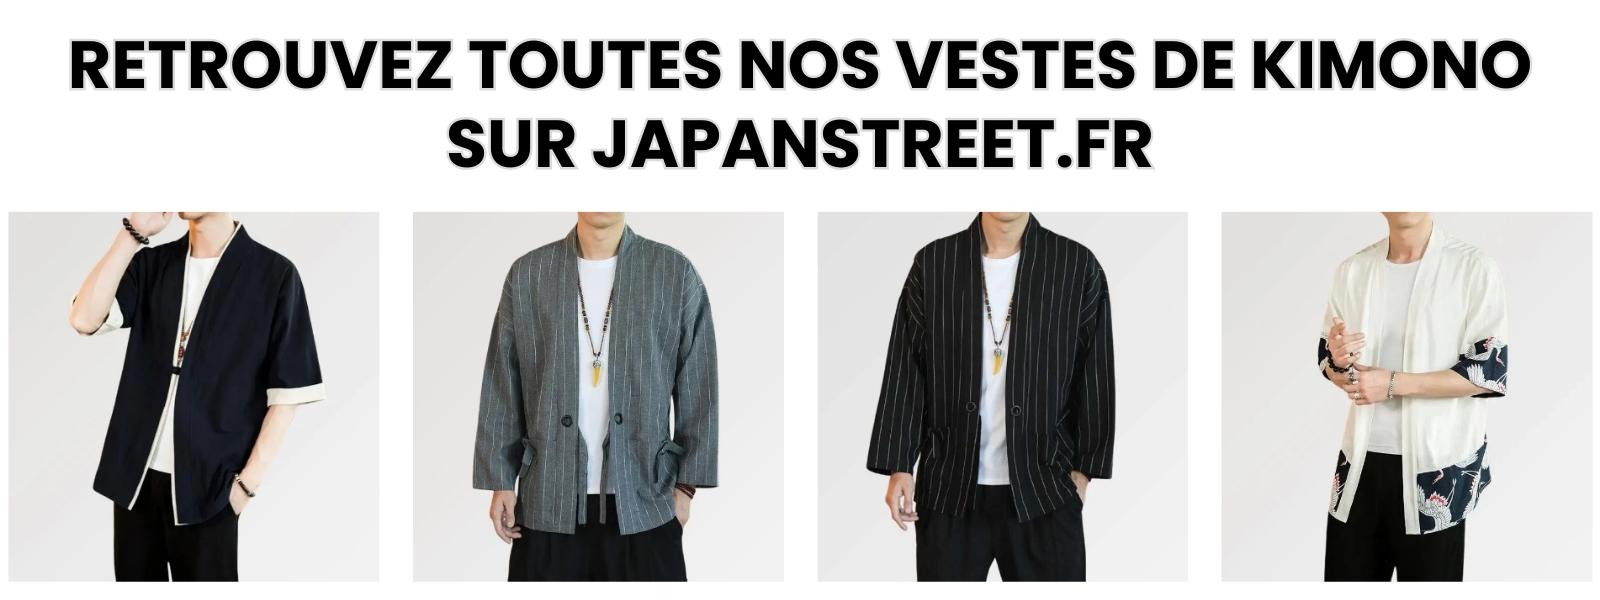 Veste de kimono japanstreet